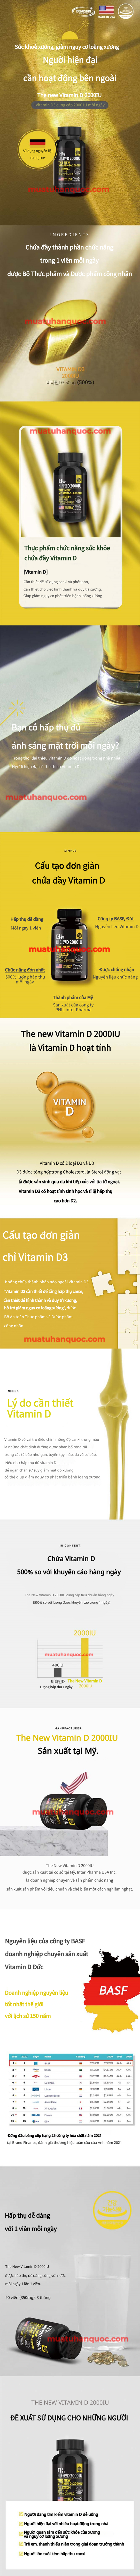 Viên Uống Dong Shin Health The New Vitamin D 2000IU
Cải thiện sức khoẻ xương, giảm nguy cơ loãng xương.
Sản phẩm uy tín và chất lượng tại: Mua từ Hàn Quốc